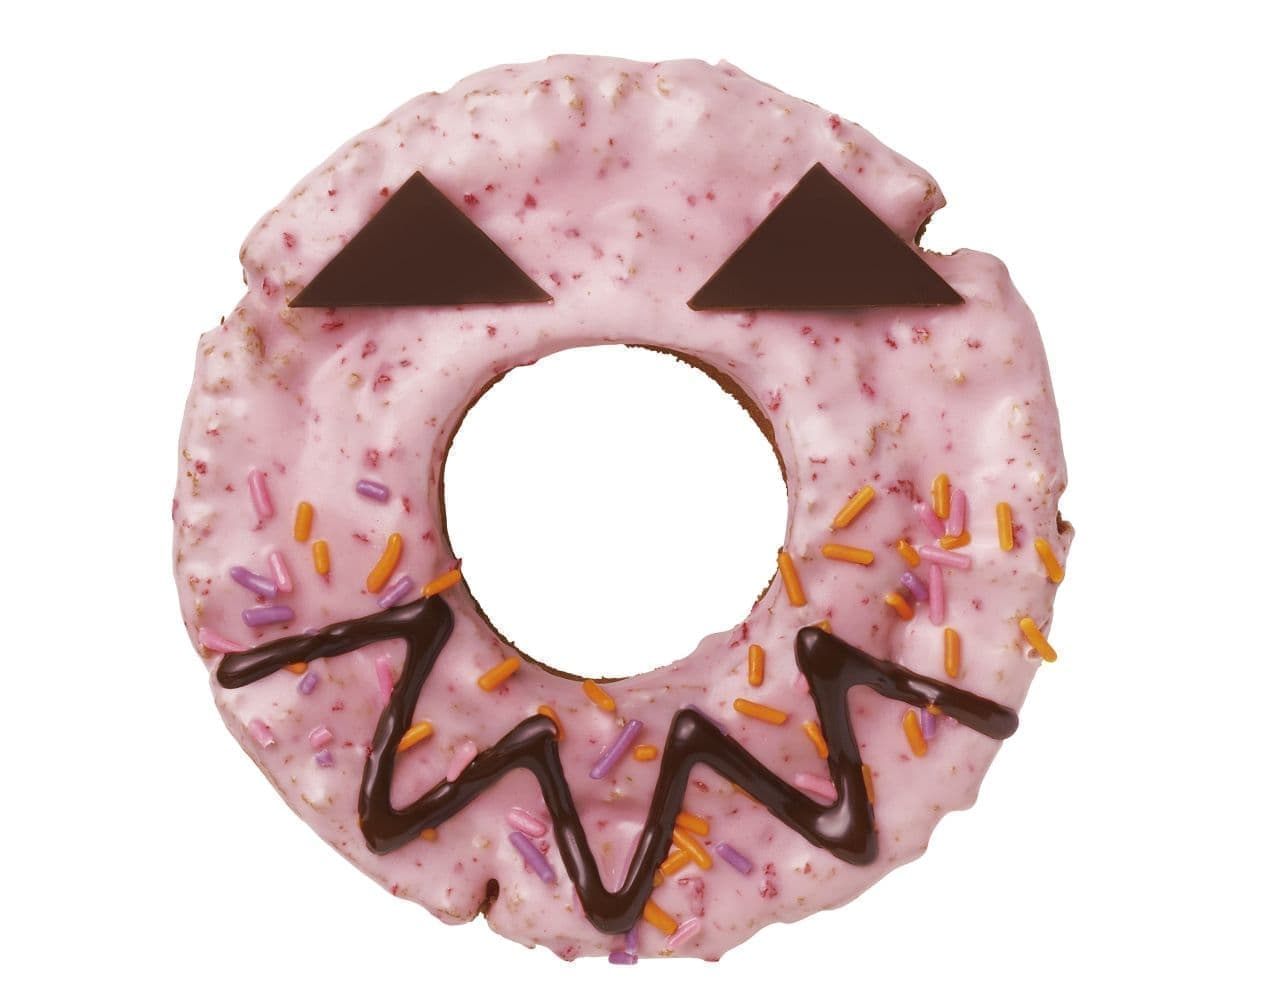 Mr. Donut "Missed Jack Lantern Pink